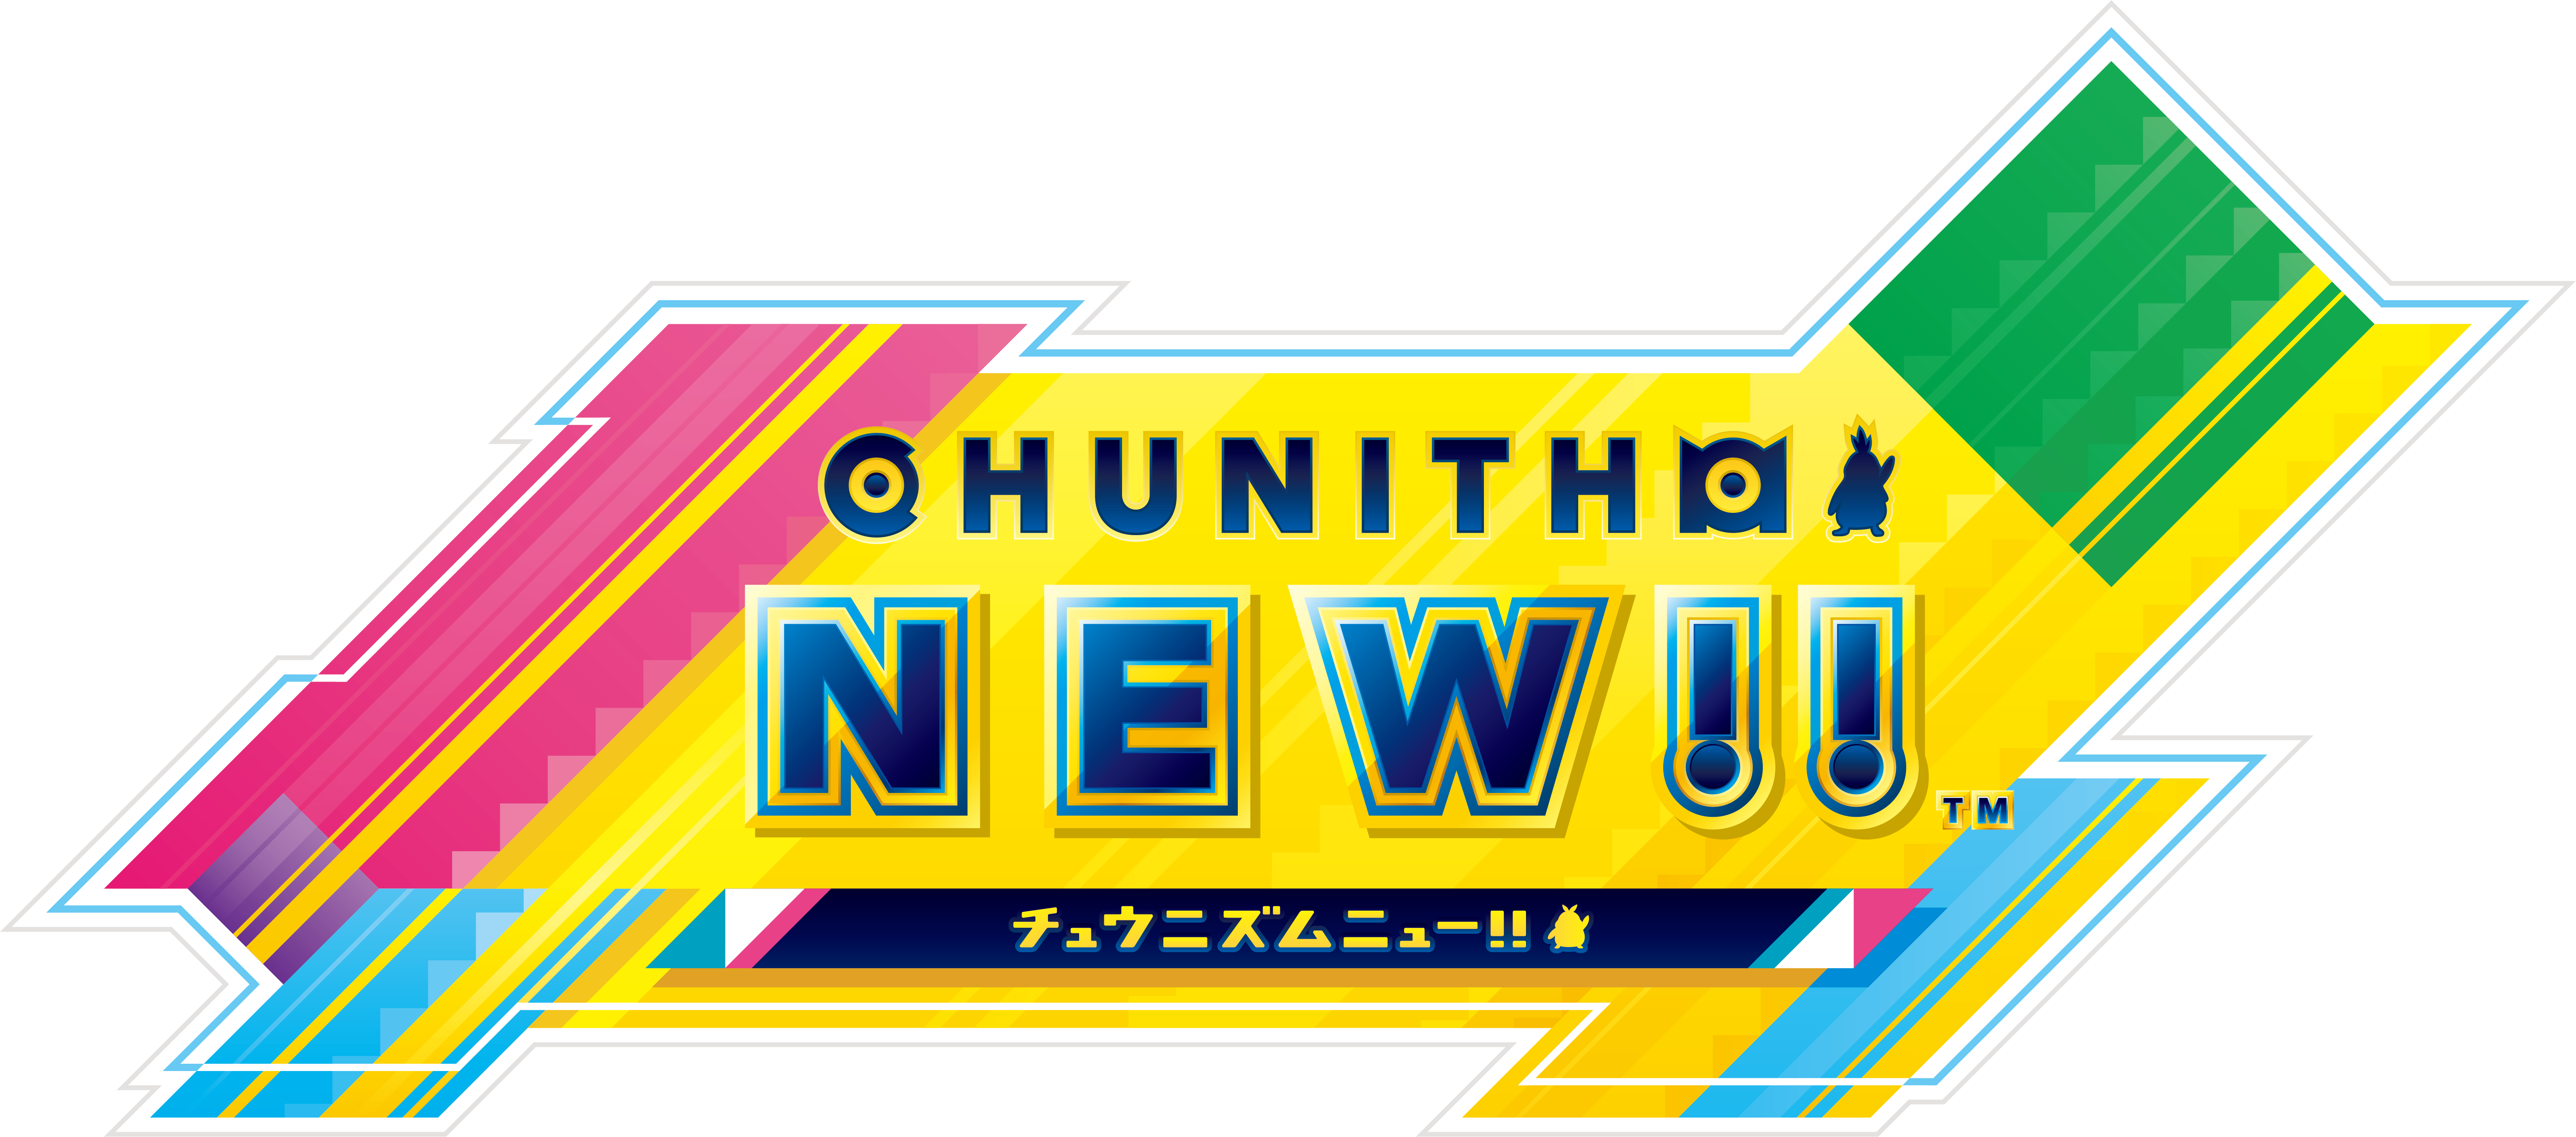 11 4 木 Chunithmのバージョンアップにともなうお知らせ Chunithm New Plus チュウニズム ニュー プラス セガ新作音ゲー